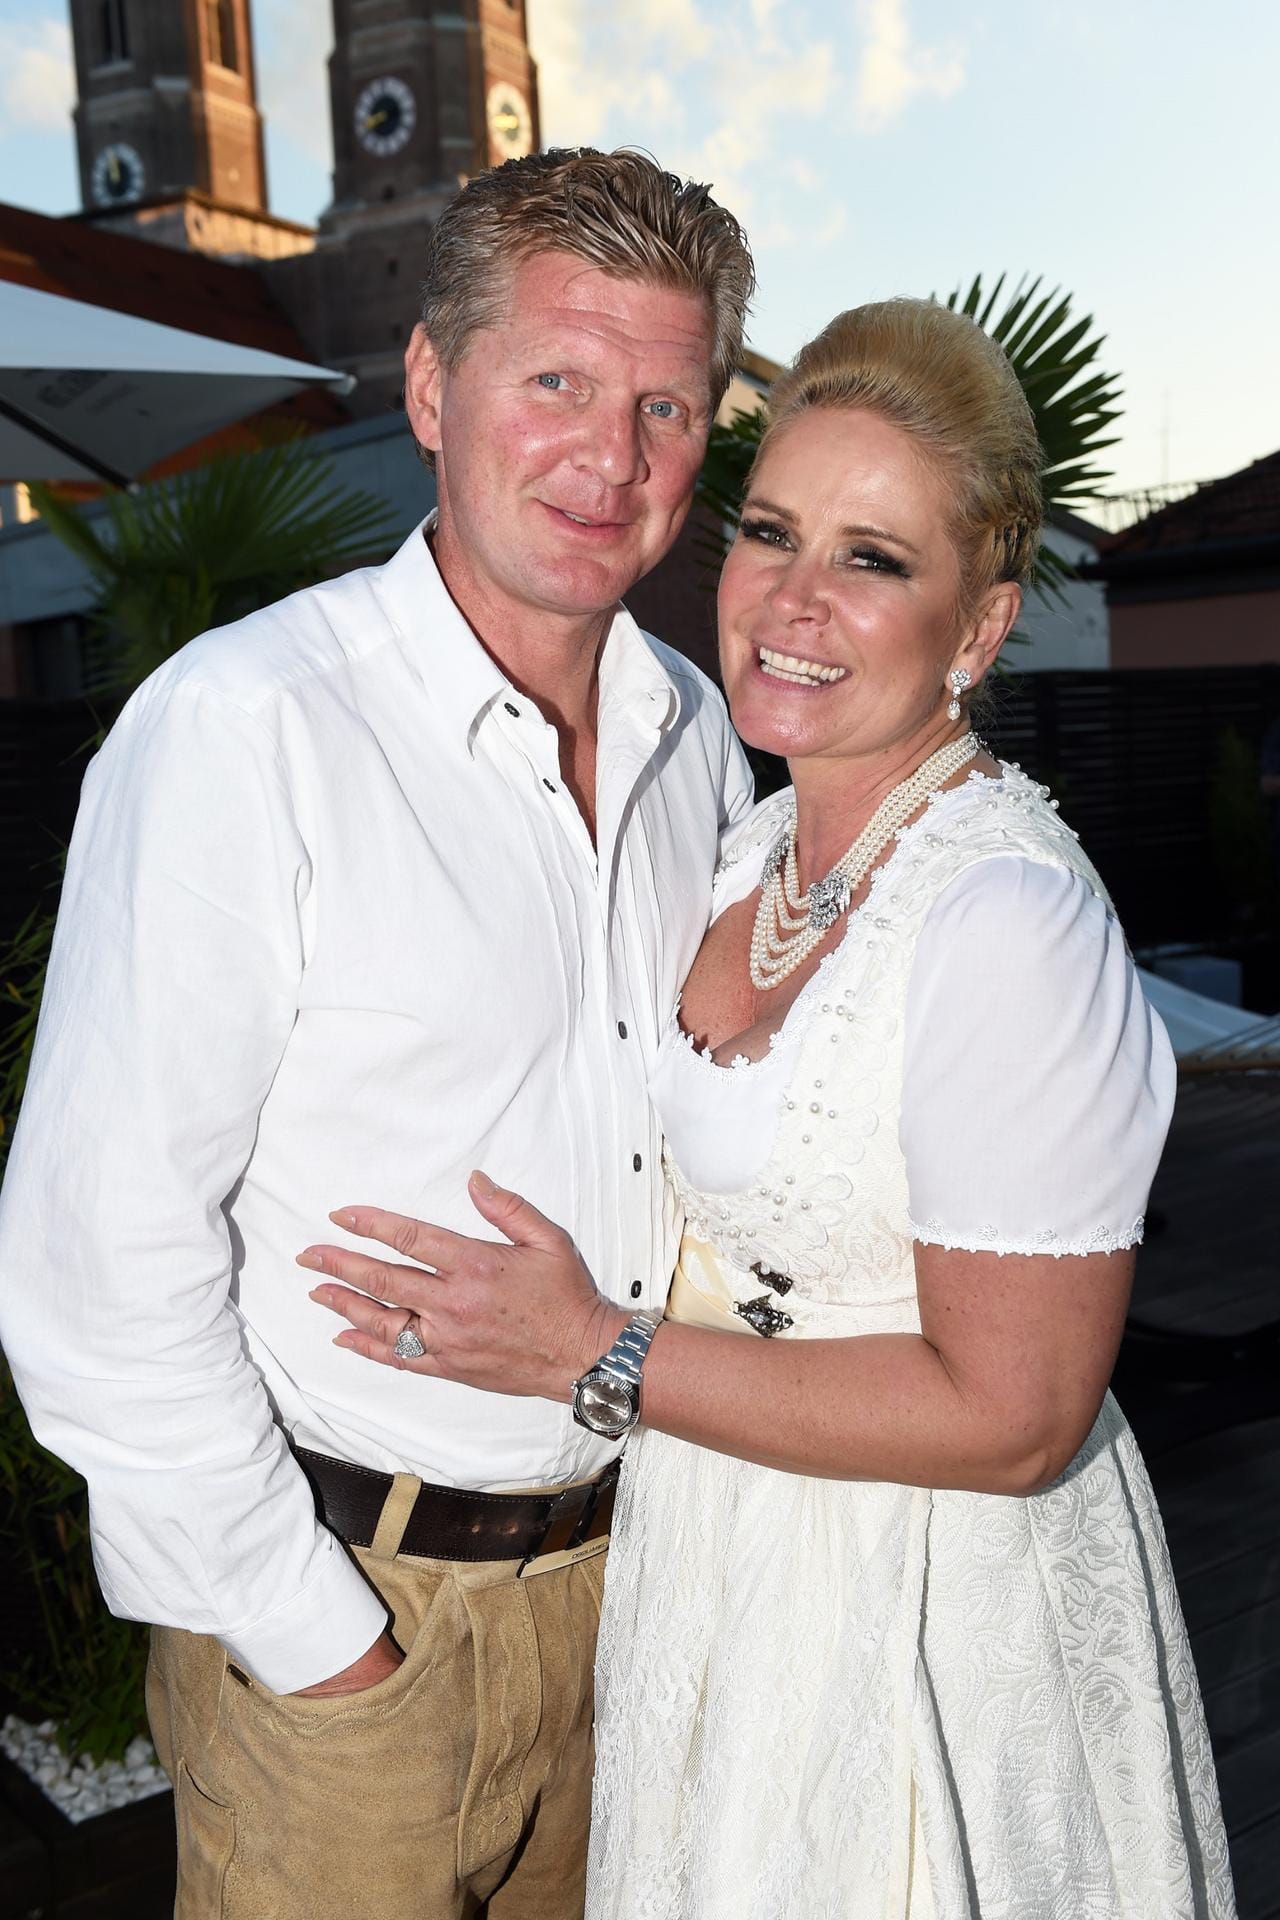 Stefan und Claudia Effenberg: 2004 heirateten der ehemaliger Fußballspieler und das Model. In ihrer Beziehung ging es immer wieder auf und ab. Seit 2019 erneuerten sie ihr Ehegelübde und sind bis heute unzertrennlich.